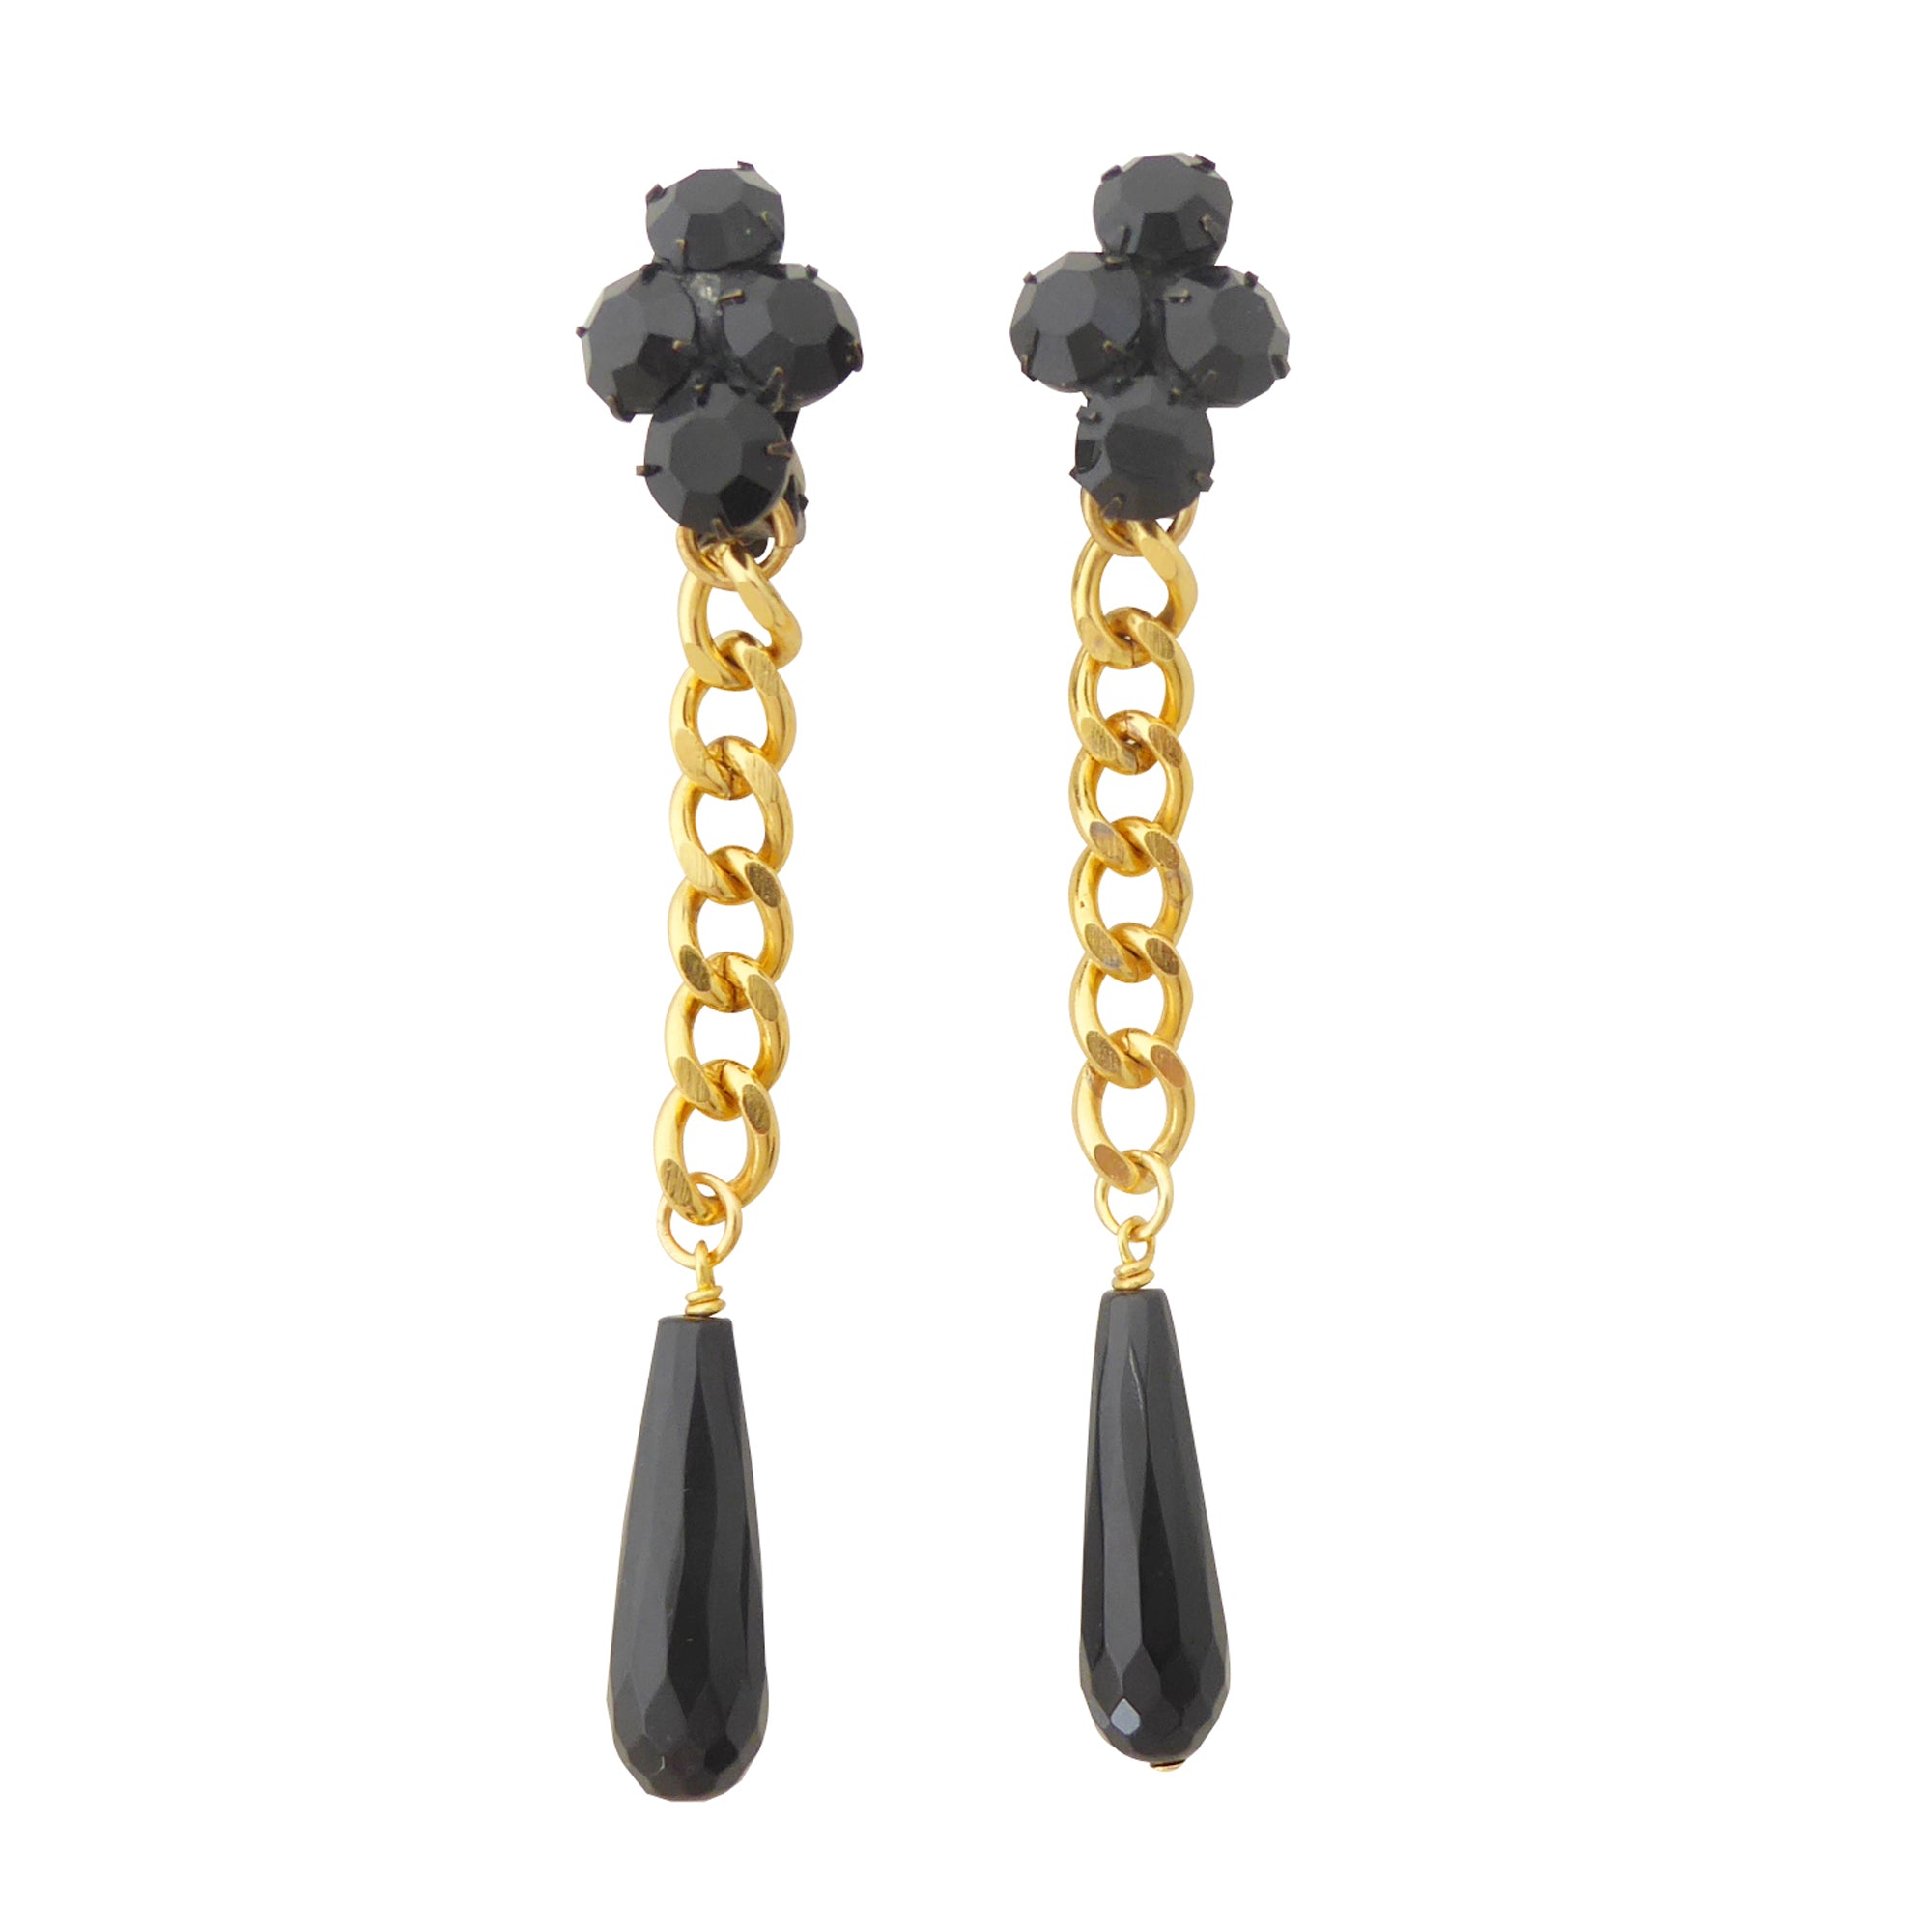    Black onyx teardrop earrings by Jenny Dayco 1